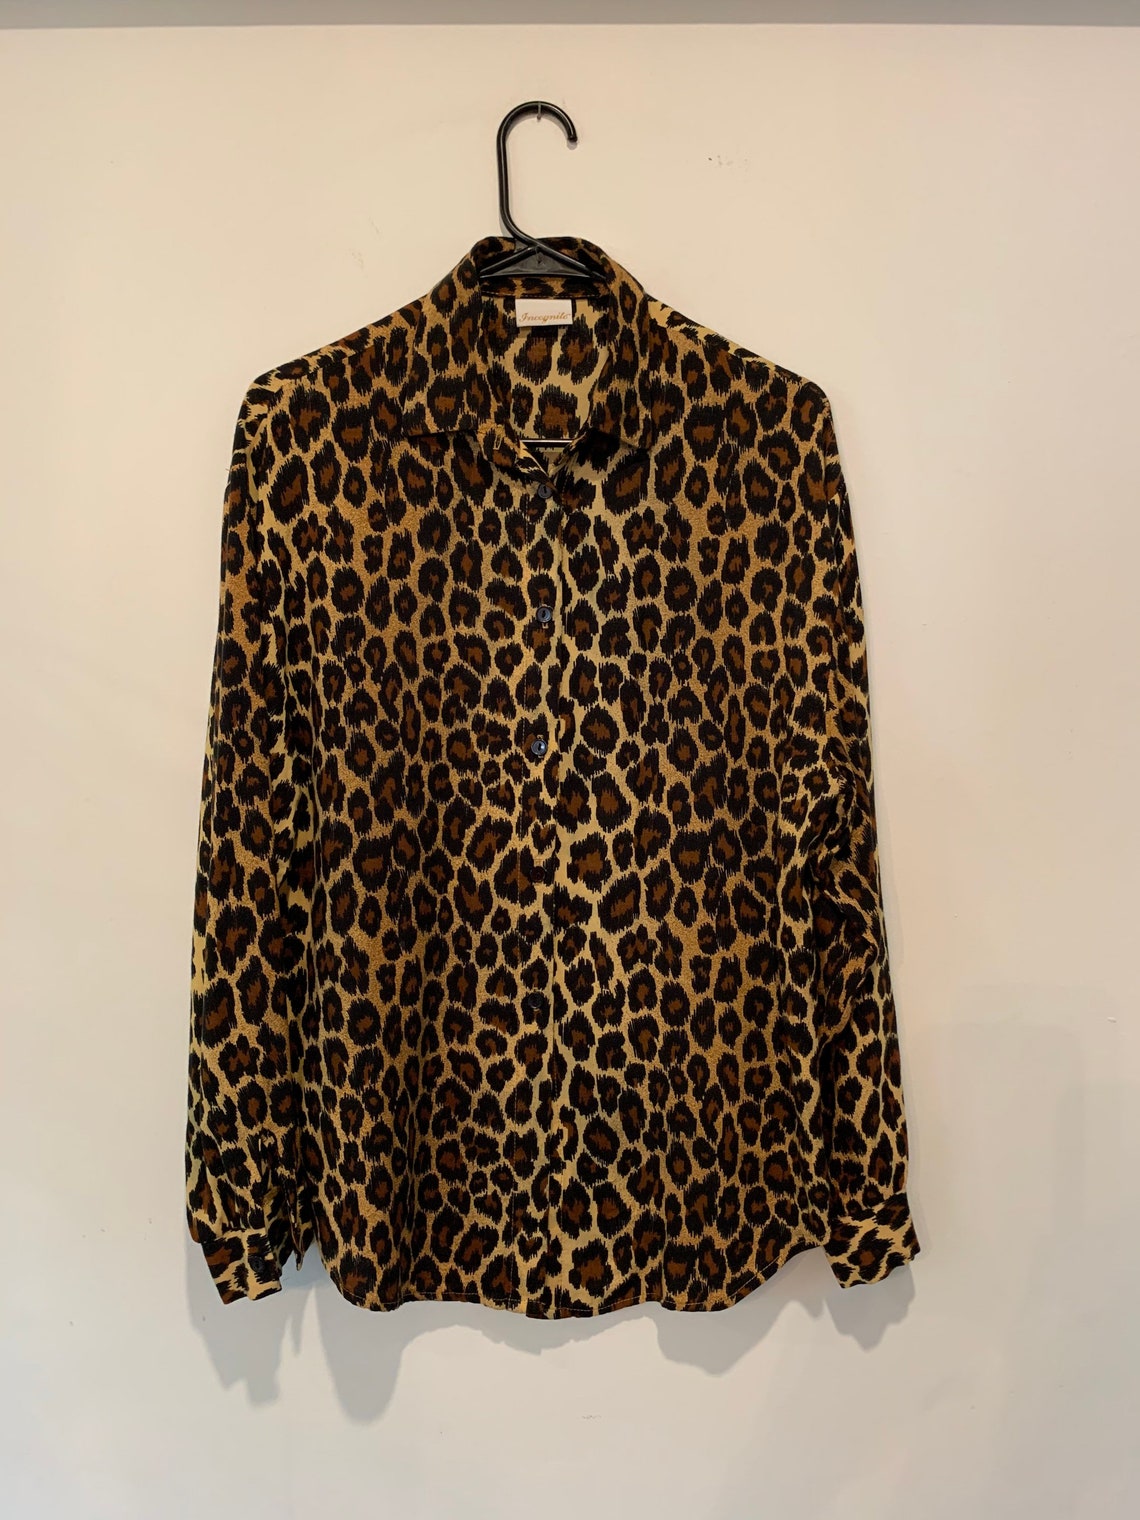 Vintage Leopard Blouse | Etsy